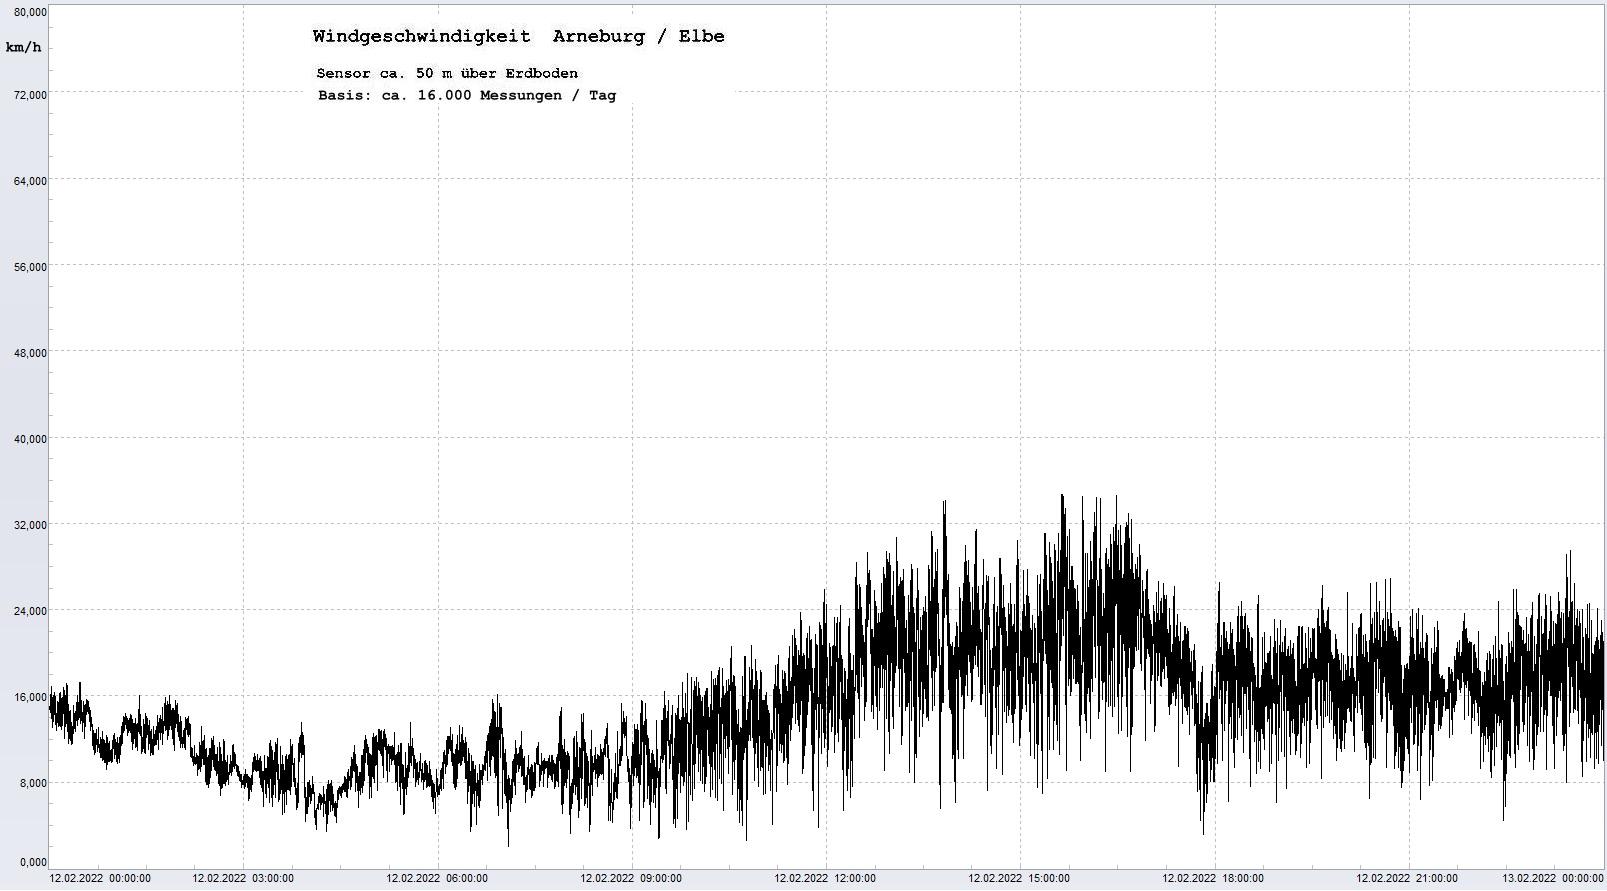 Arneburg Tages-Diagramm Winddaten, 12.02.2022
  Diagramm, Sensor auf Gebude, ca. 50 m ber Erdboden, Basis: 5s-Aufzeichnung